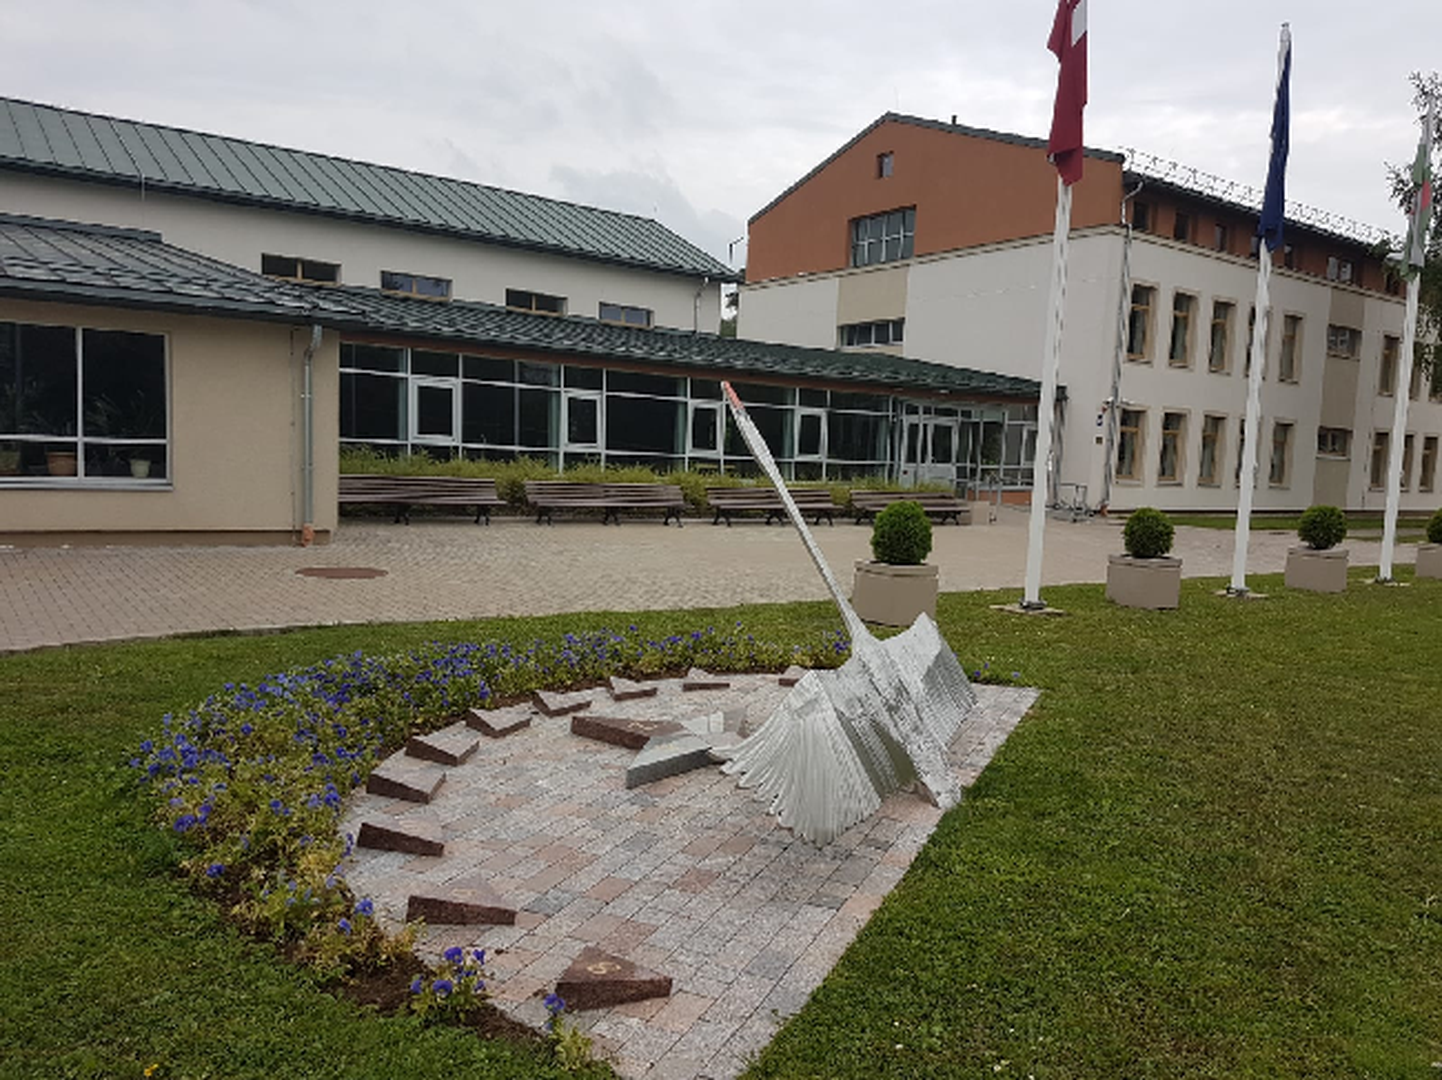 Gulbene koolimaja ees olev skulptuur kujutab Gulbene vapilooma luike.